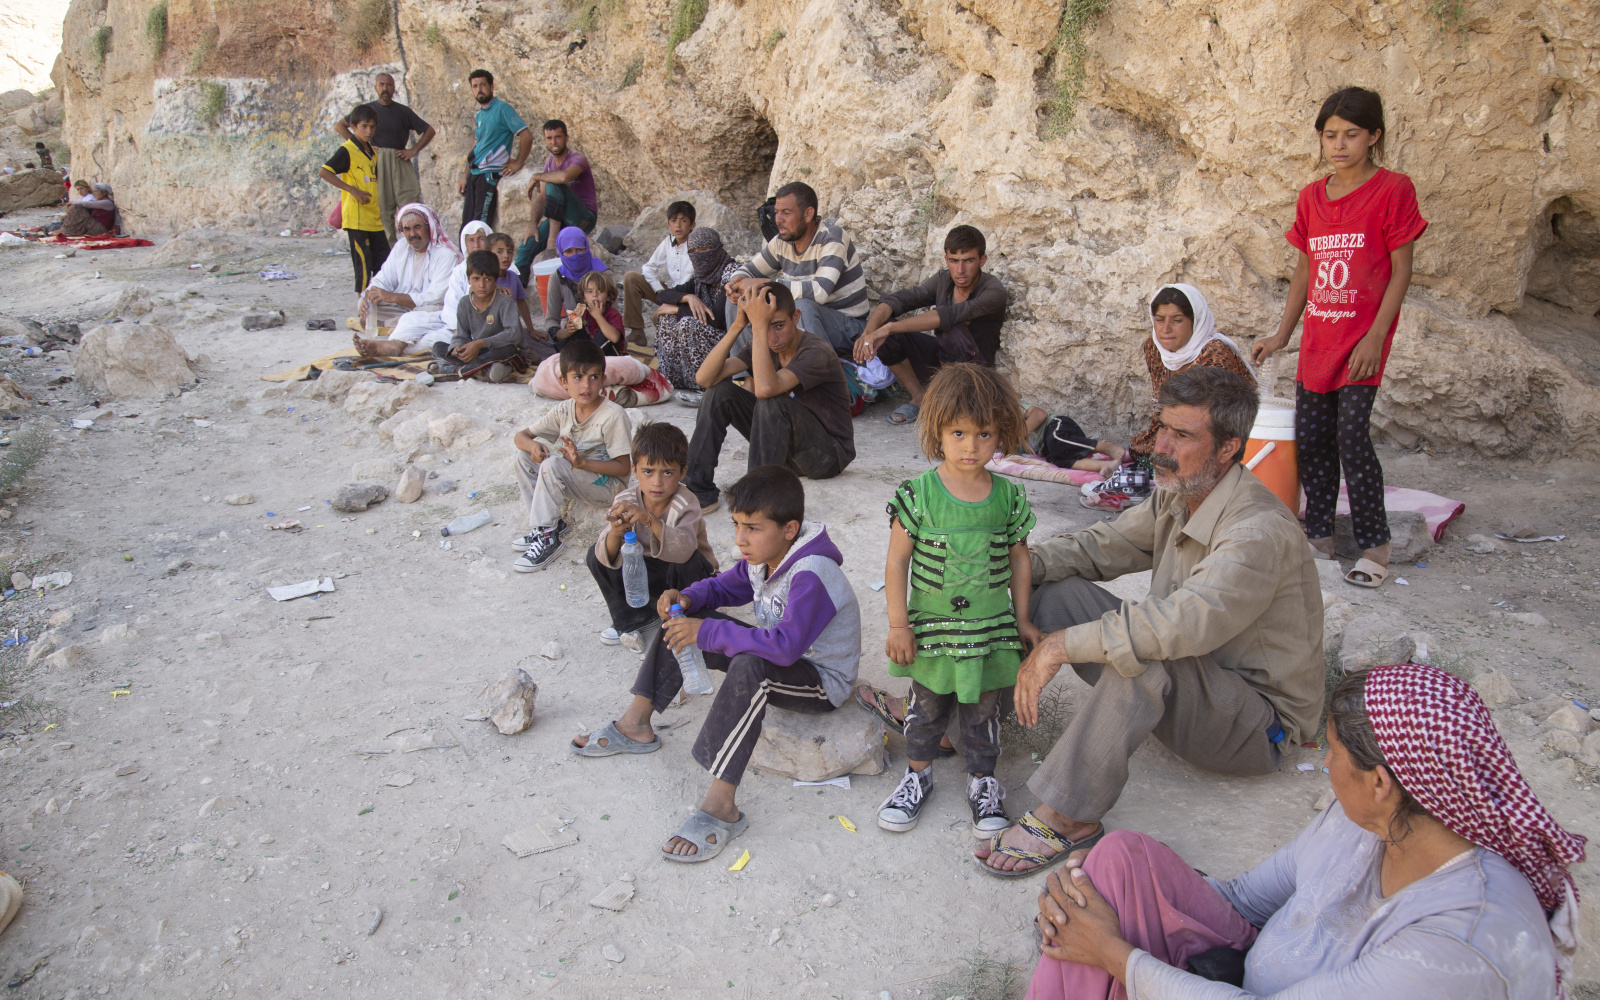 Zu sehen ist sind viele geflüchtete Kinder mit ihren Familienangehörigen auf einem Berg.